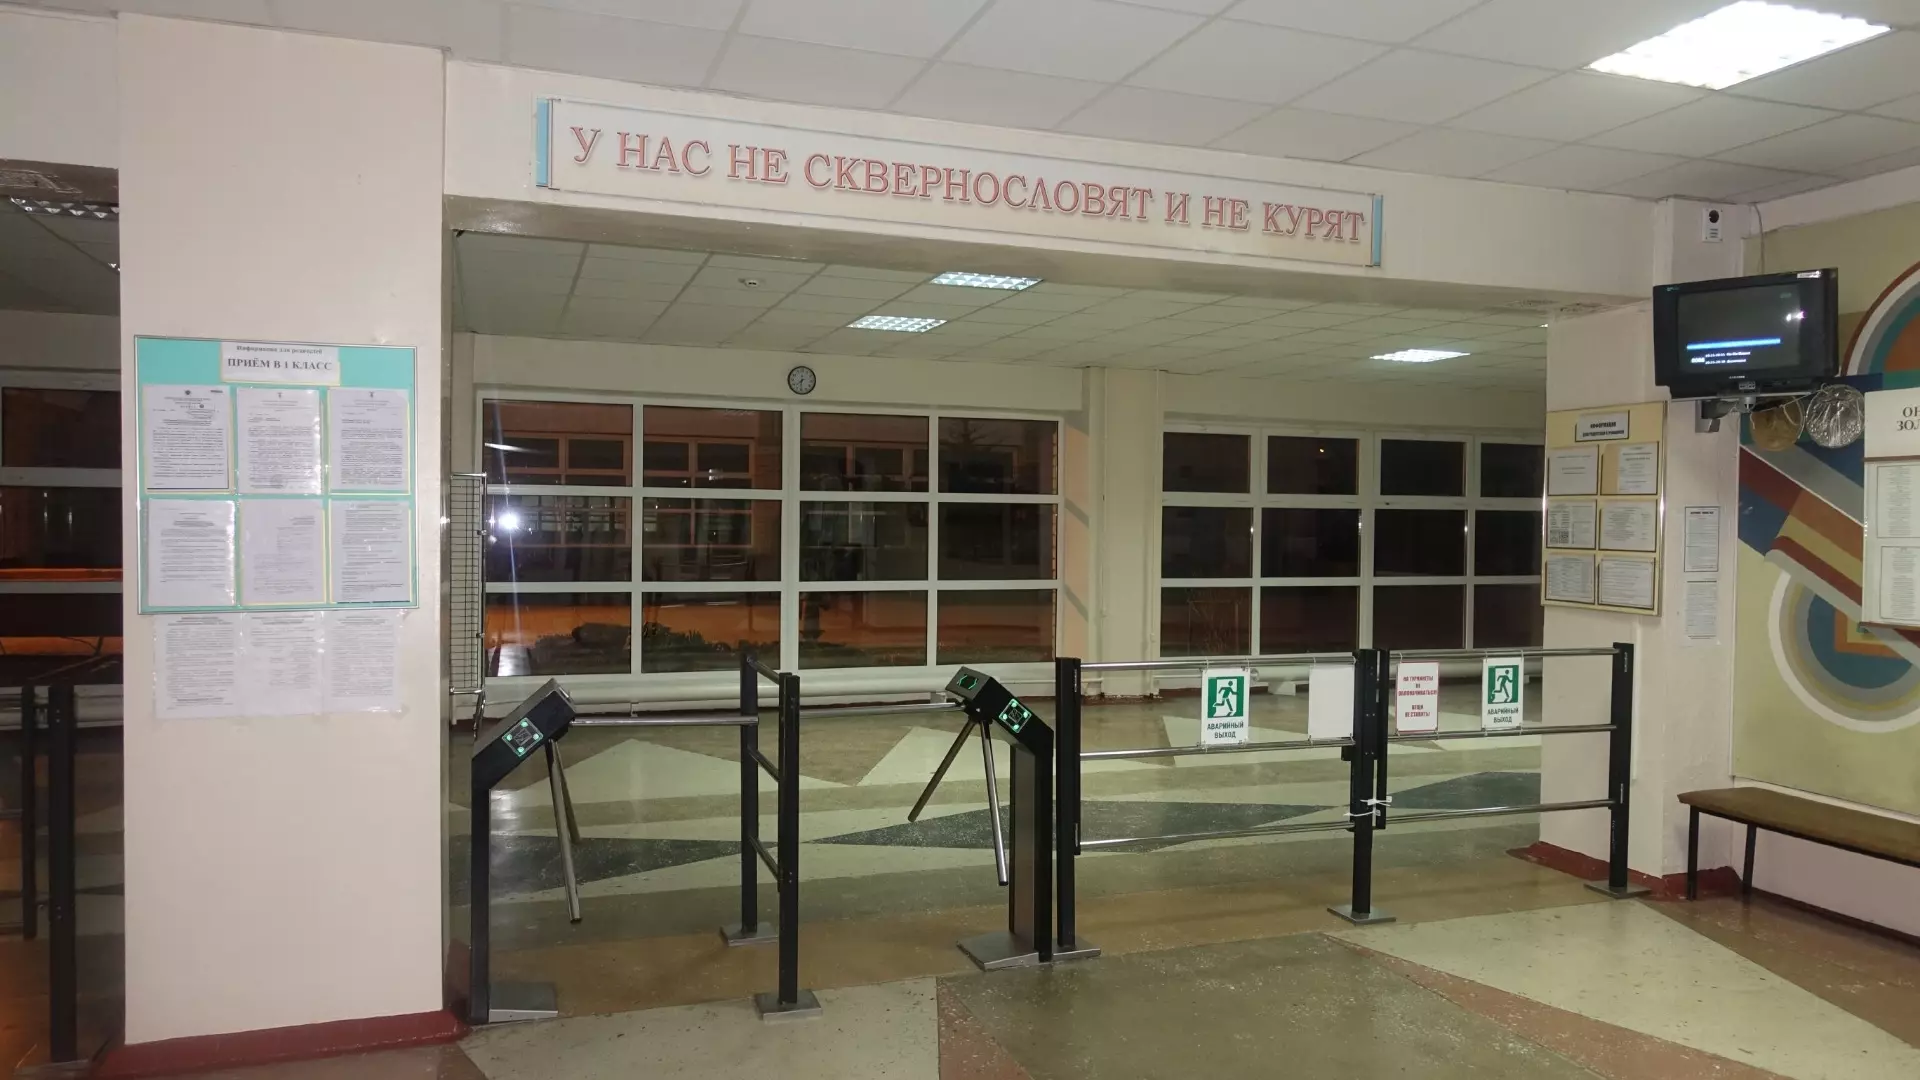 Установка контрольно-пропускных пунктов требуется в 15 школах Казани